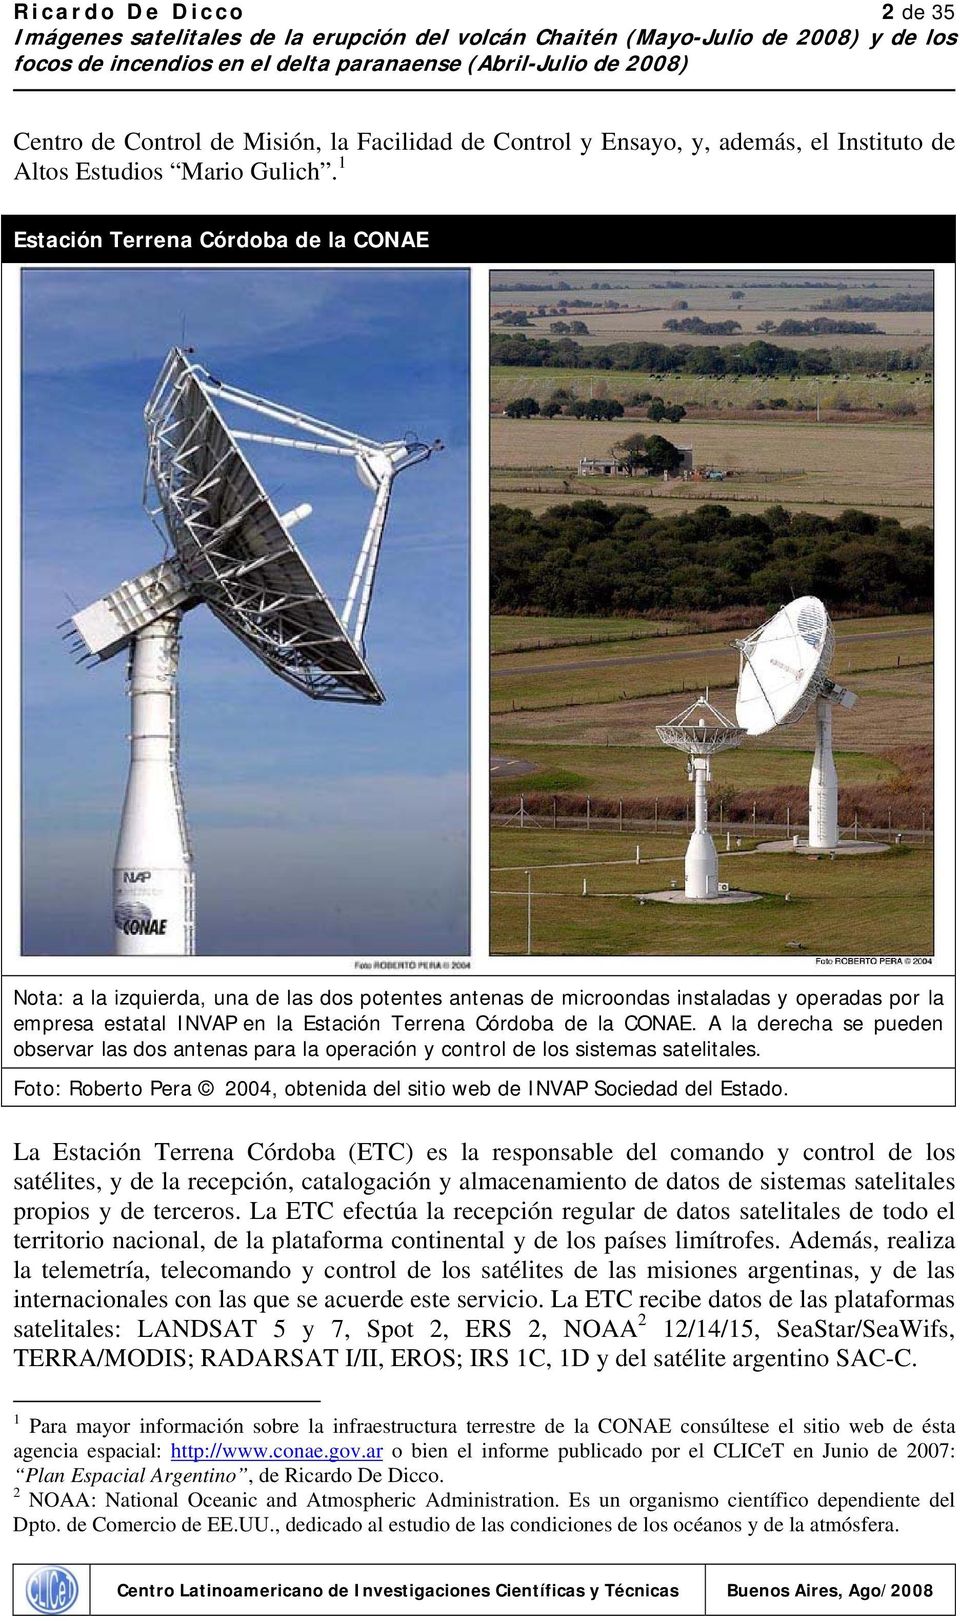 CONAE. A la derecha se pueden observar las dos antenas para la operación y control de los sistemas satelitales. Foto: Roberto Pera 2004, obtenida del sitio web de INVAP Sociedad del Estado.